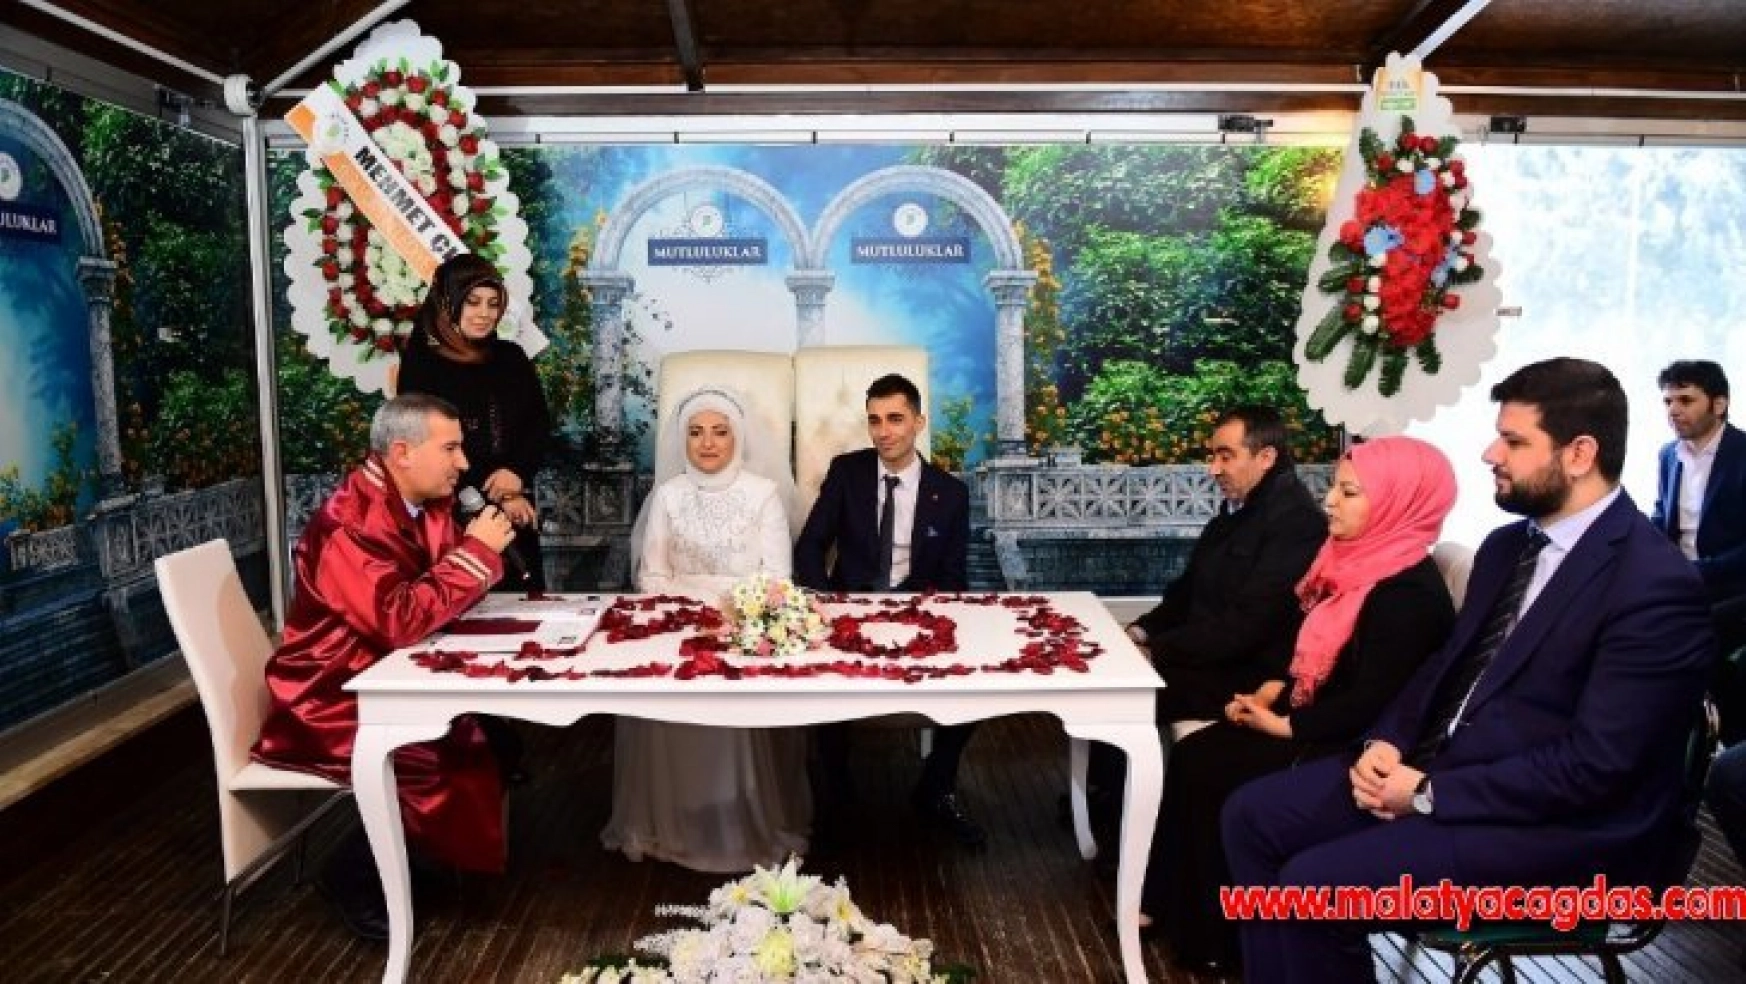 Başkan Çınar genç çiftlerin mutluluğuna ortak oldu